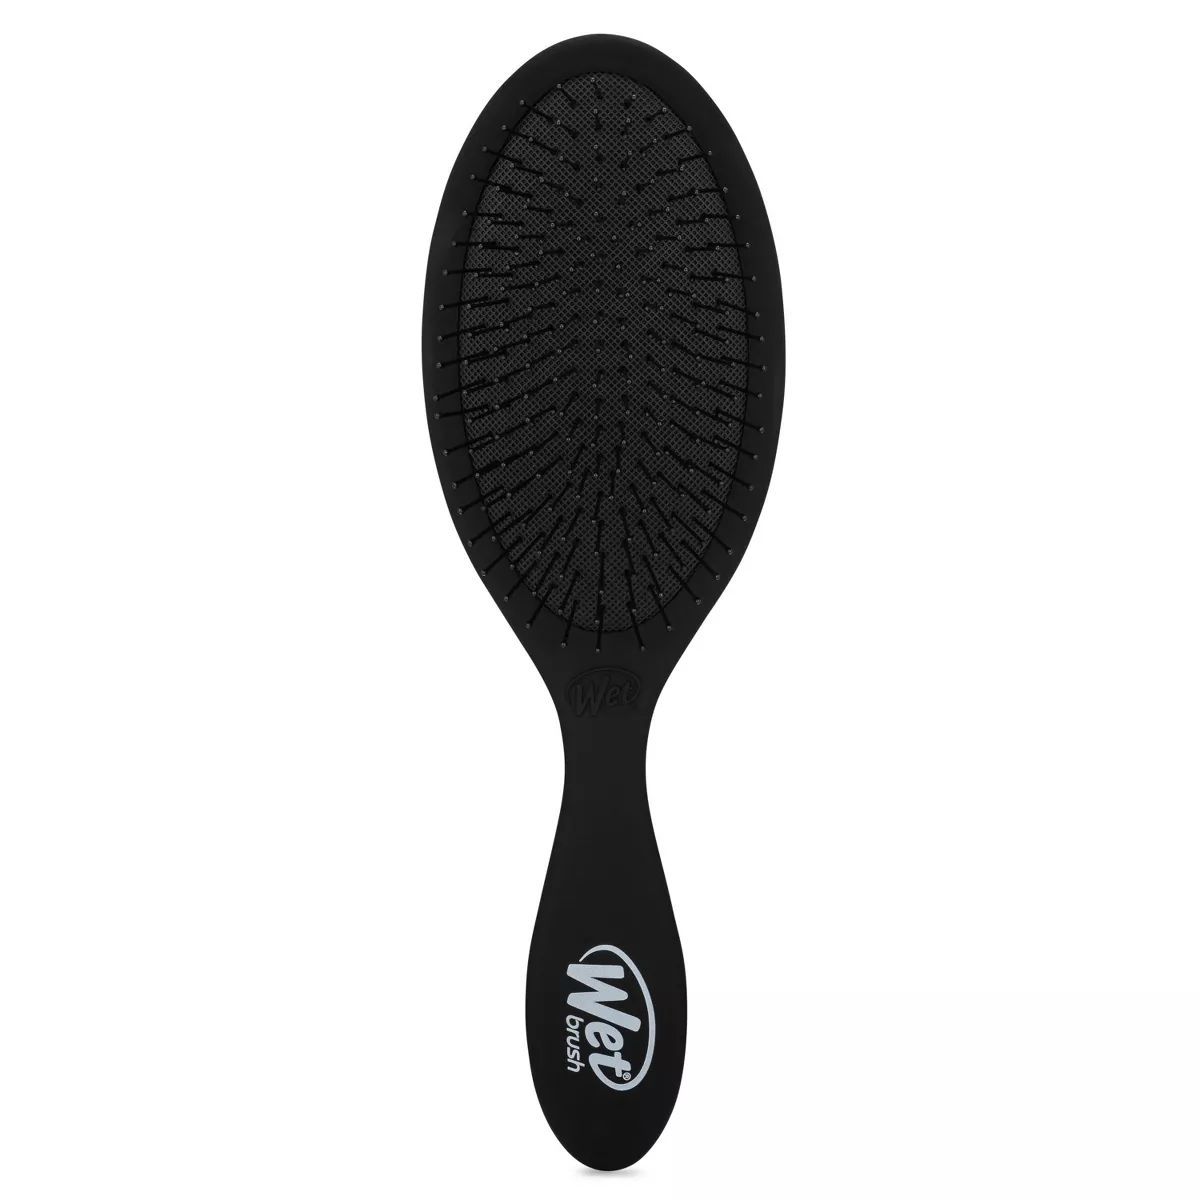 Wet Brush Original Detangler Hair Brush for Less Pain, Effort and Breakage | Target